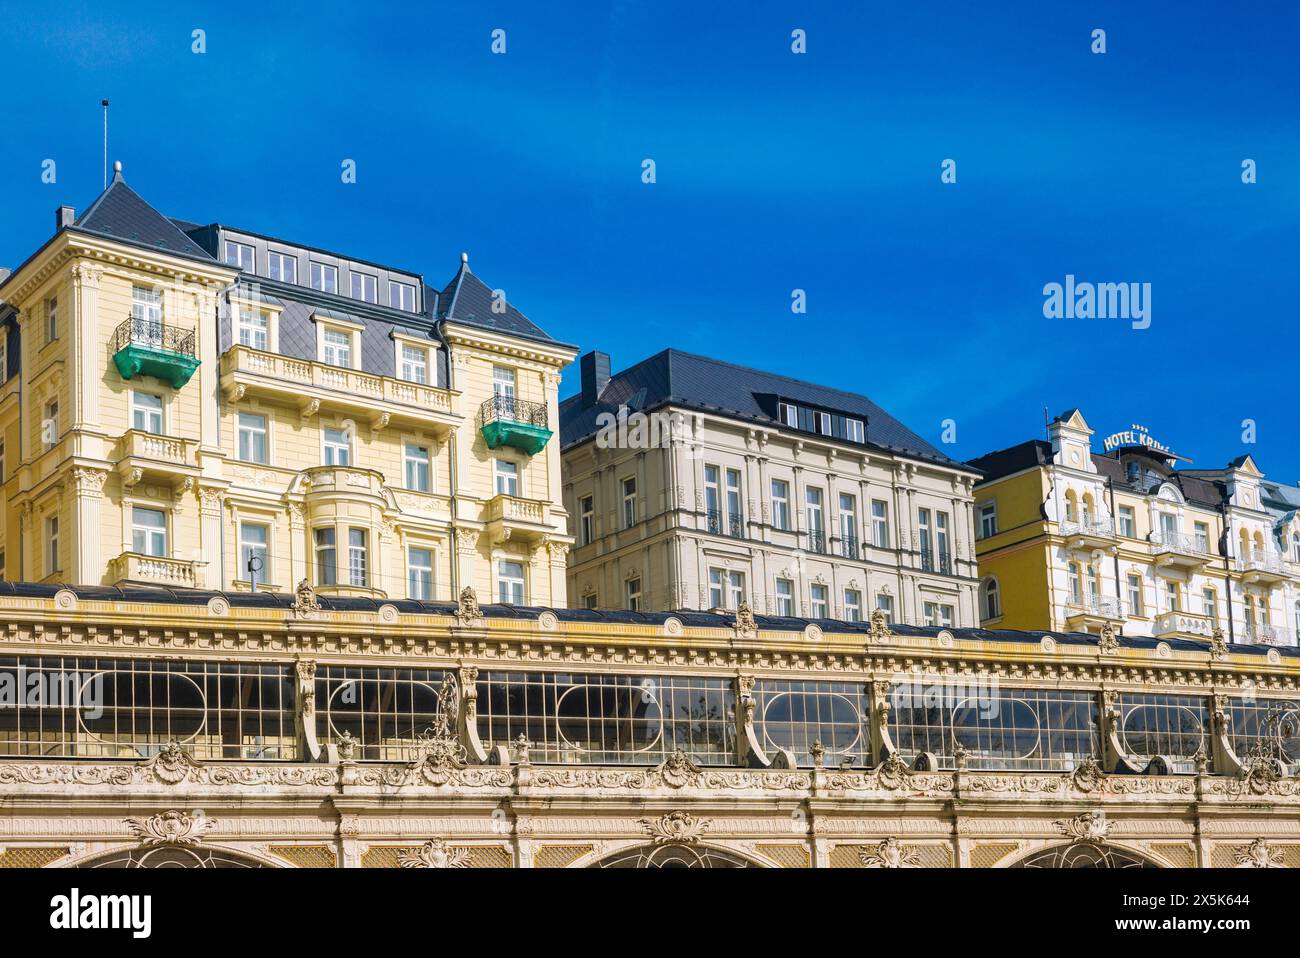 Spa colonnades and historical buildings in Marienbad/Mariánské Lázne (Czech Republic) Stock Photo